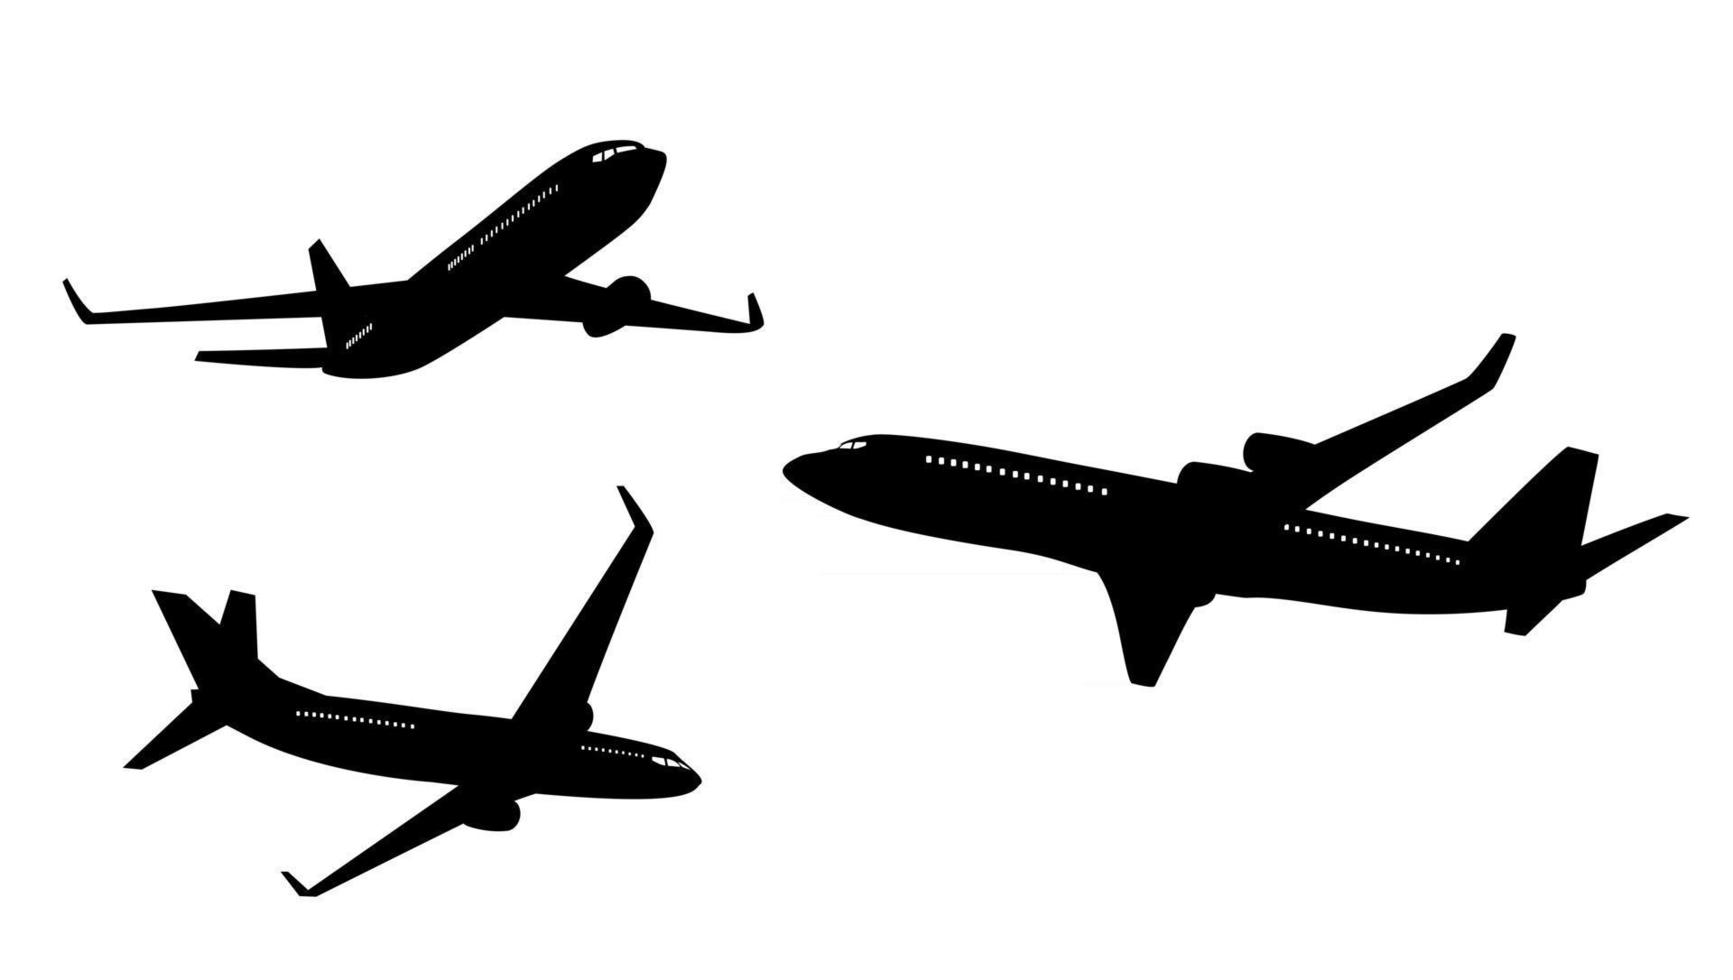 flache Flugzeugschattenbild-Sammlungssatz lokalisiert auf weißem Hintergrund vektor